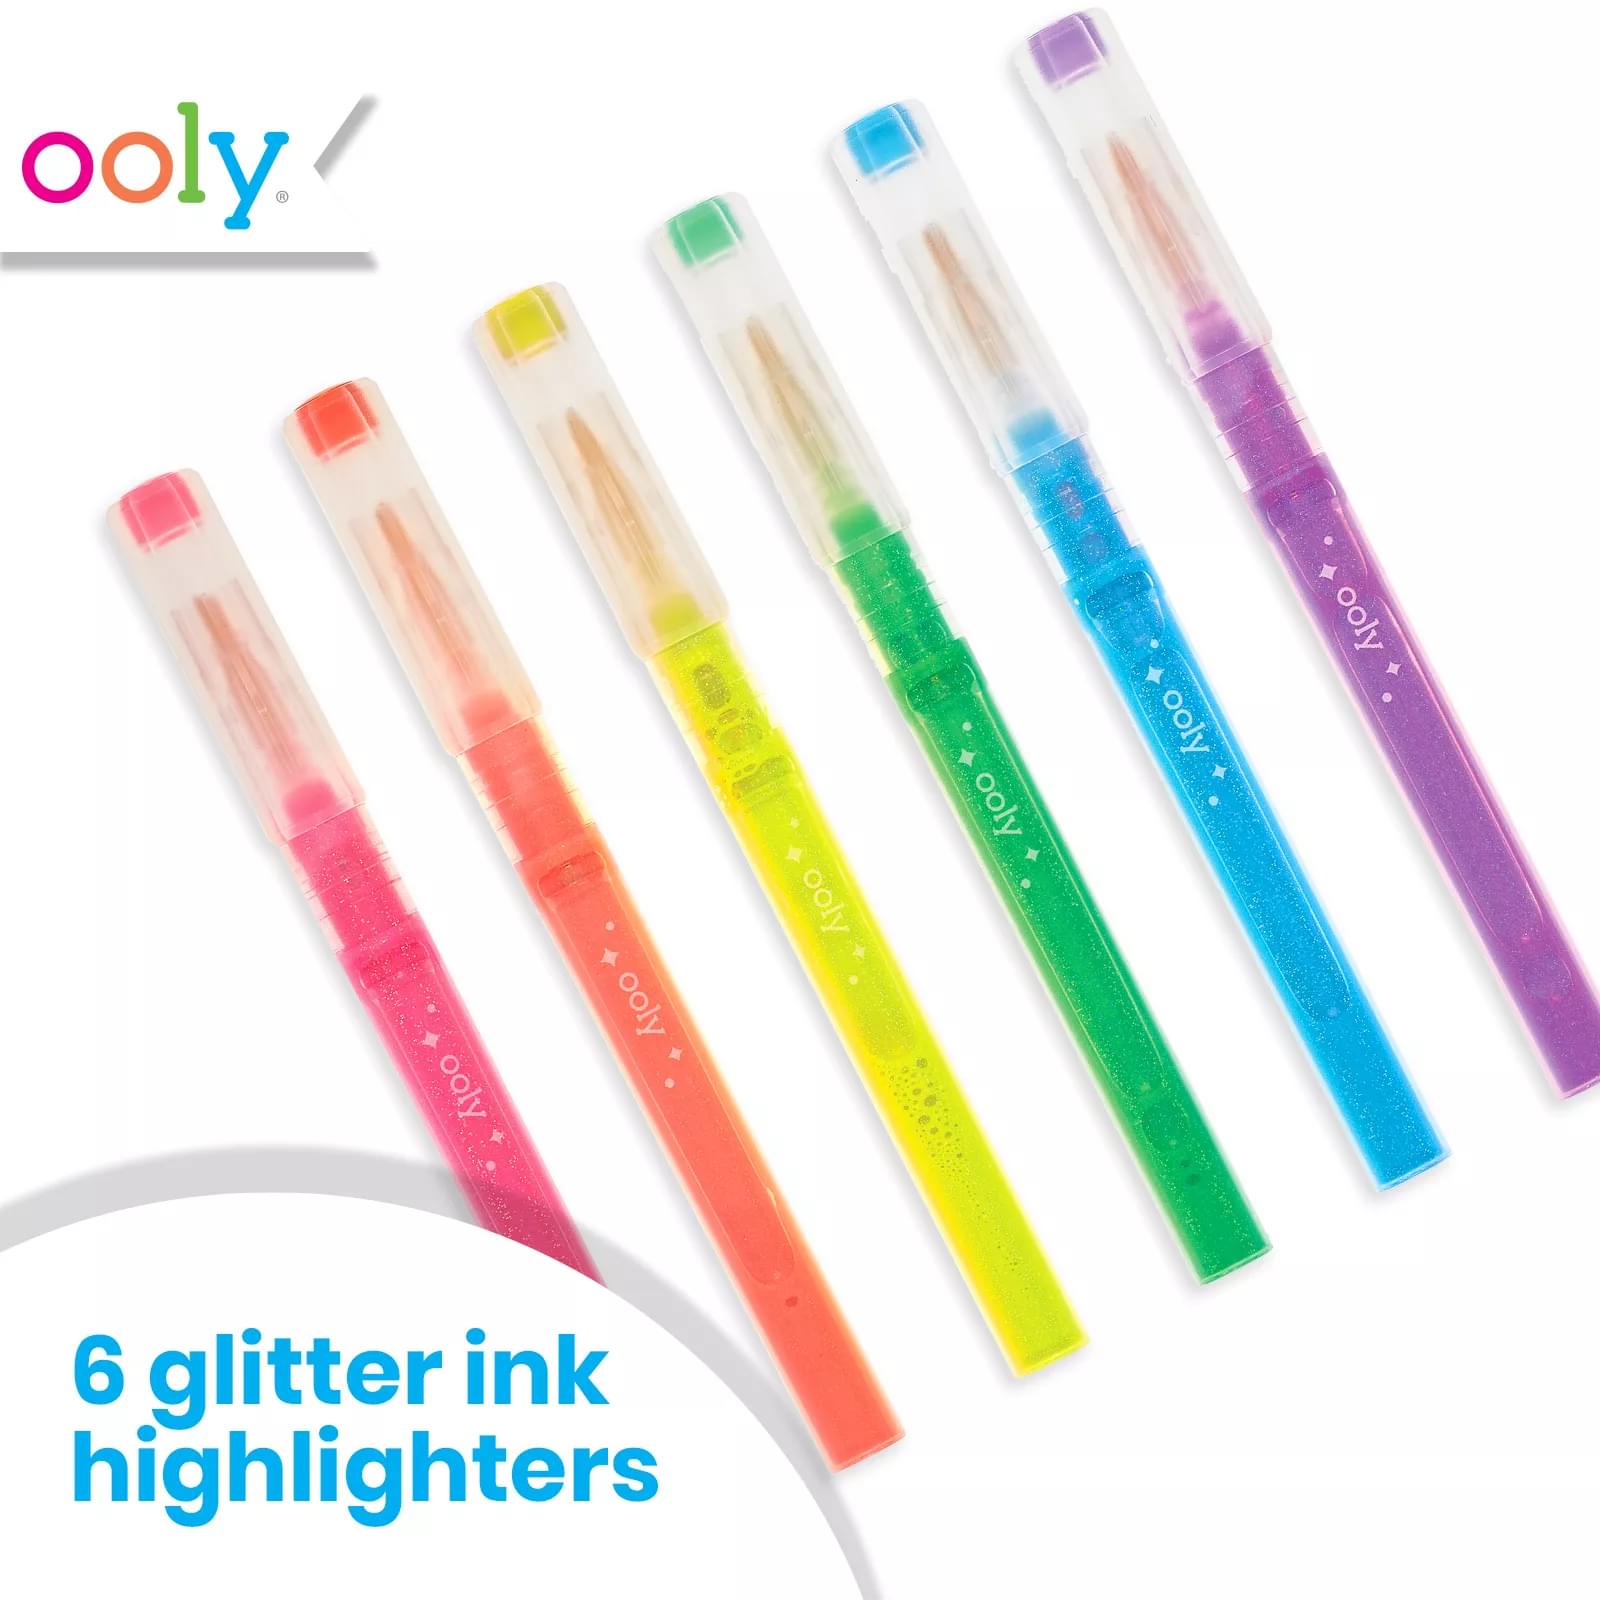 4 Pack Glitter Highlighters - Metallic Effect